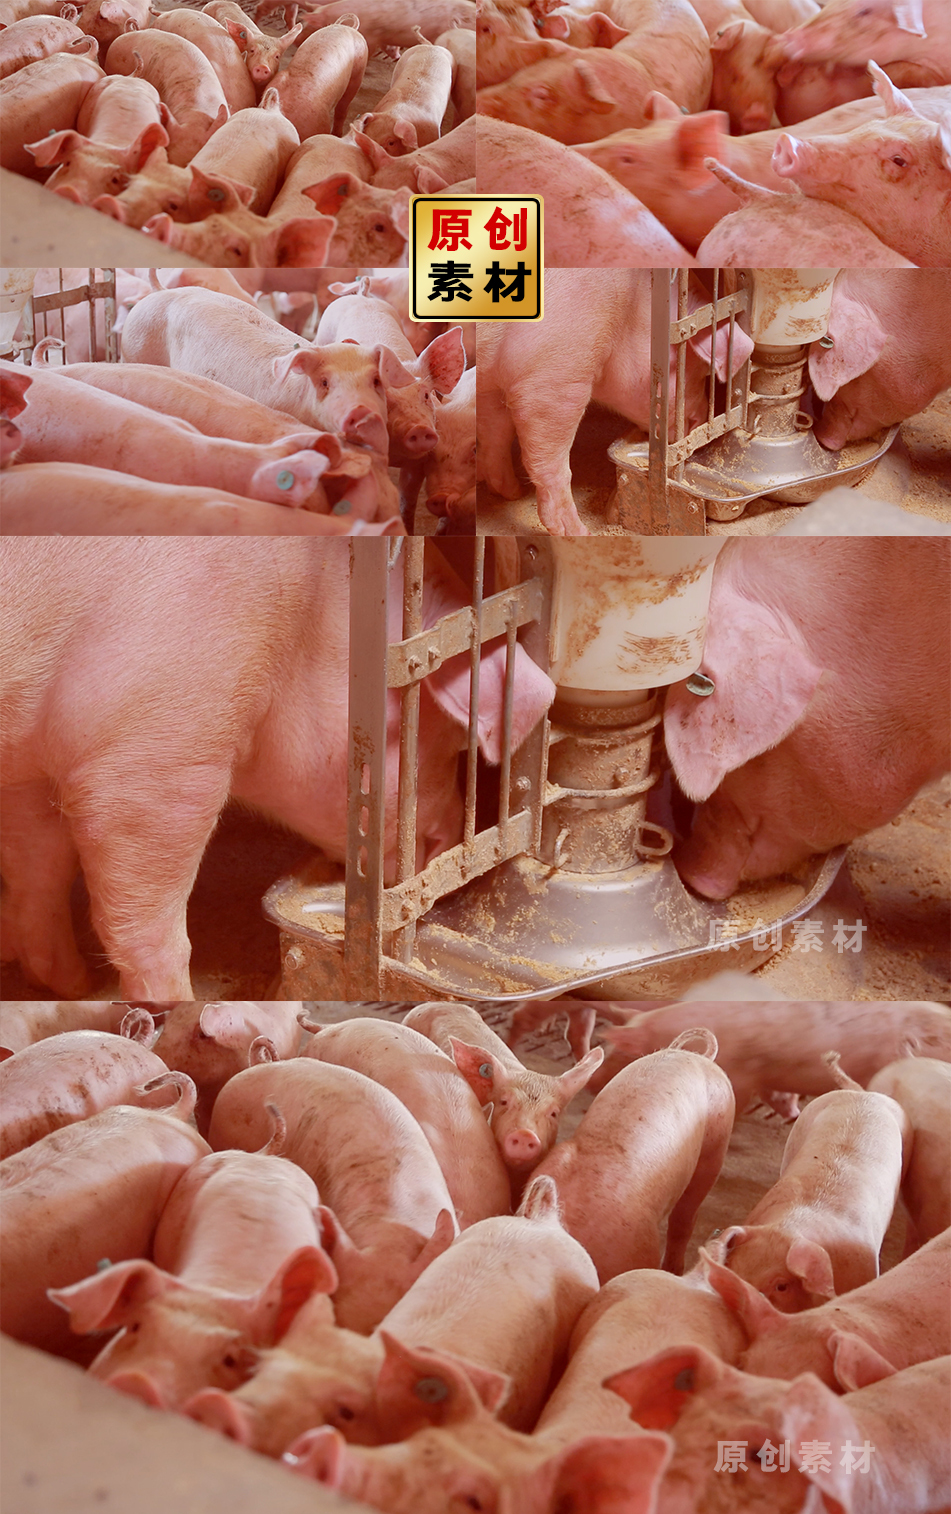 现代养猪场猪吃猪饲料 猪舍家庭牧场养猪场